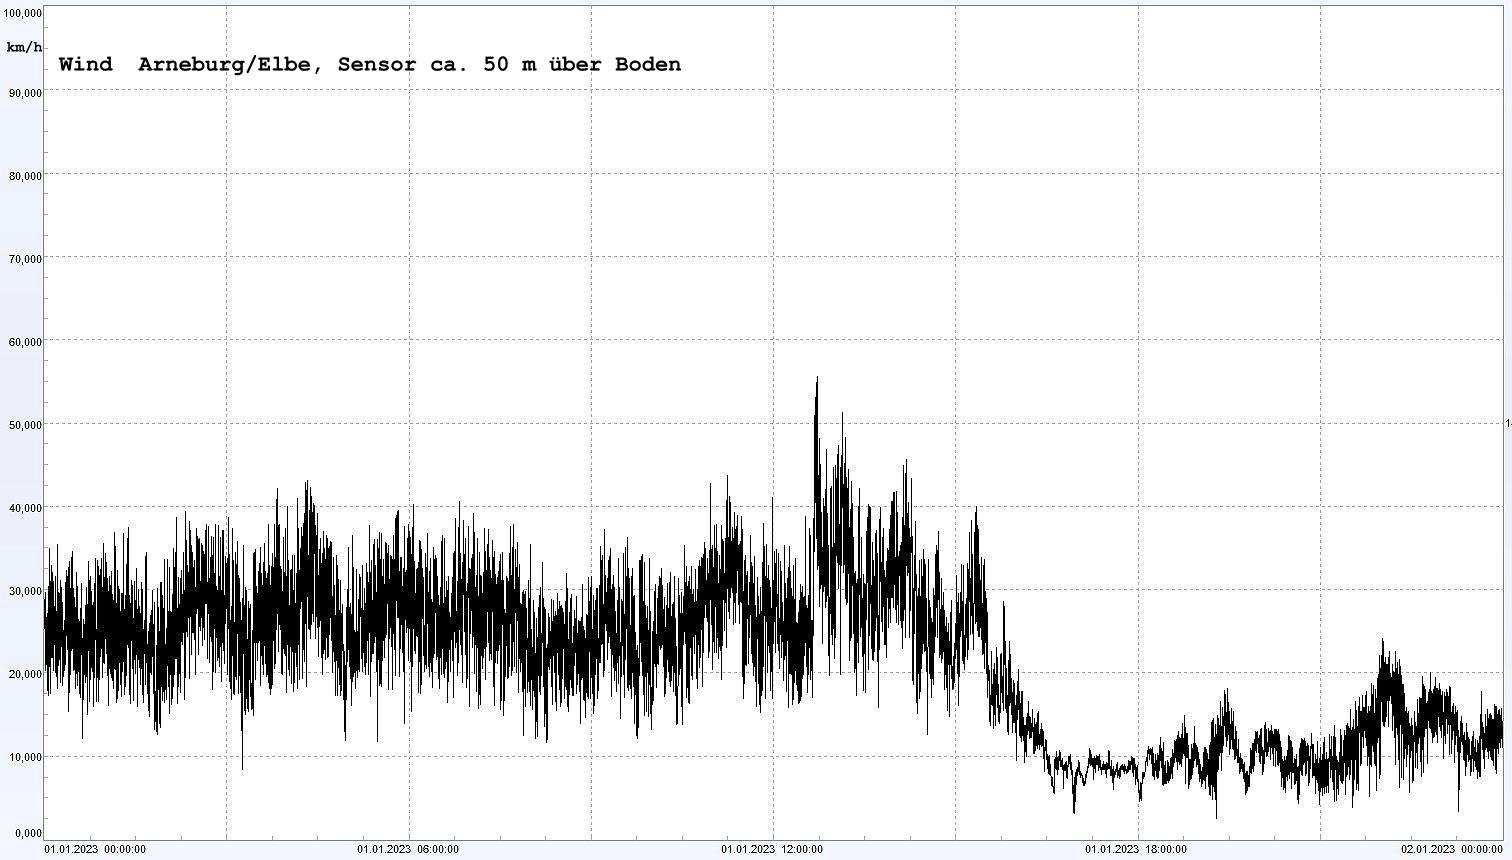 Arneburg Winddaten 01.01.2023, 
  Sensor auf Gebude, ca. 50 m ber Erdboden, 5s-Aufzeichnung